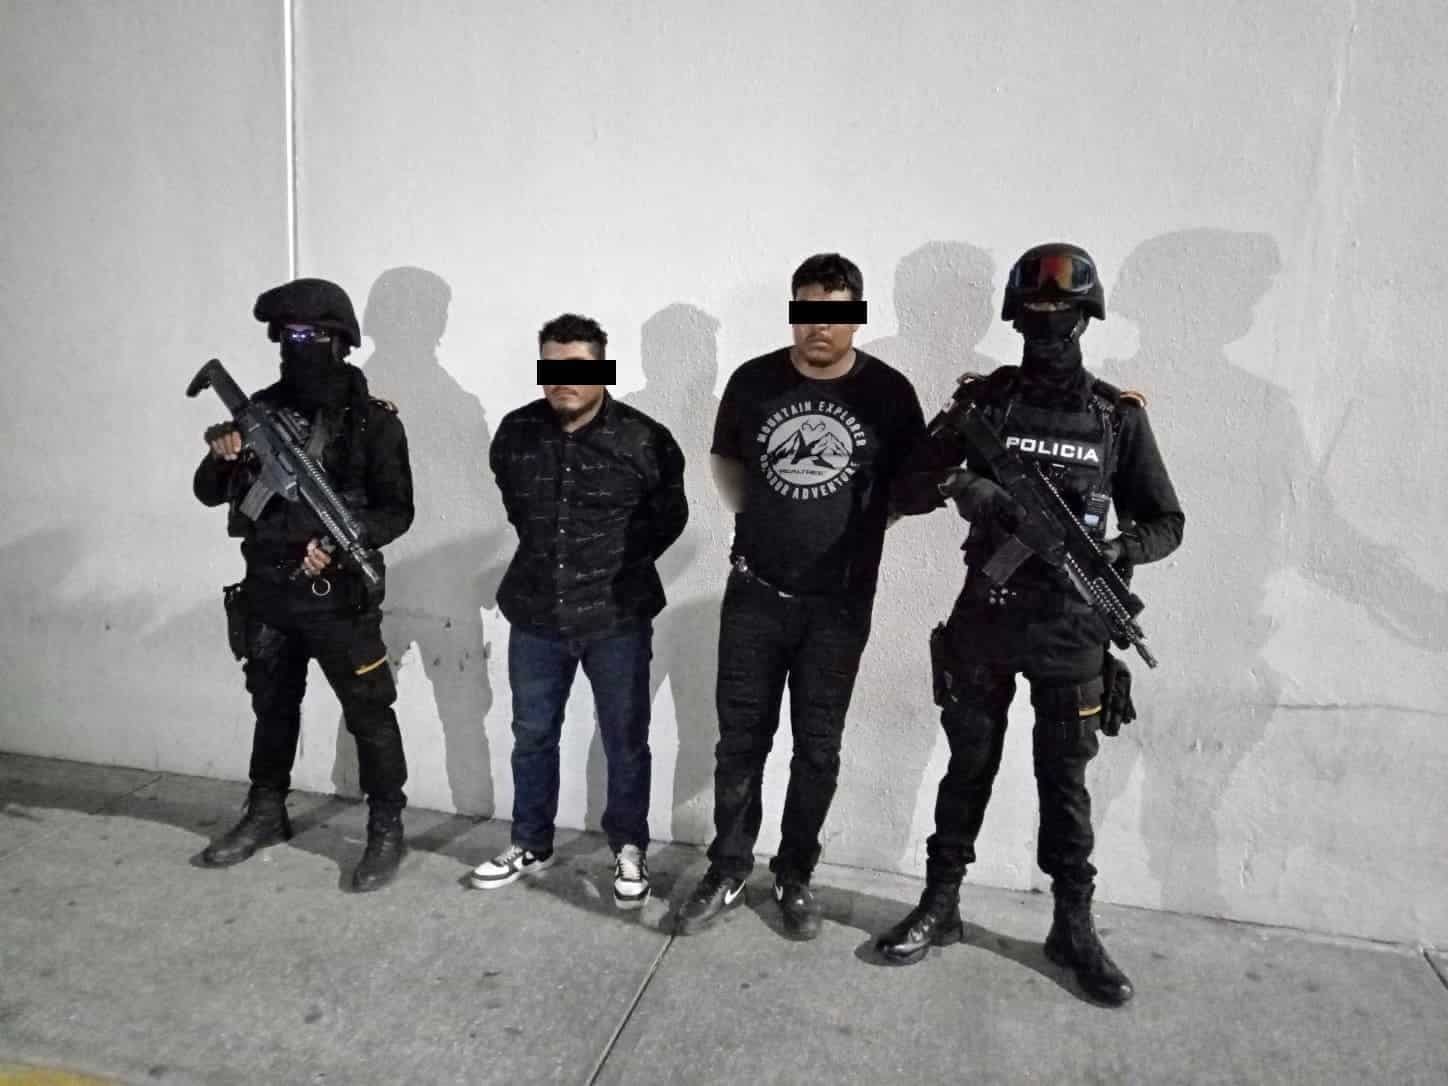 Elementos de Fuerza Civil arrestaron a dos hombres armados y con droga en calles de la Colonia Plutarco Elías Calles, la madrugada de ayer en el municipio de Monterrey.